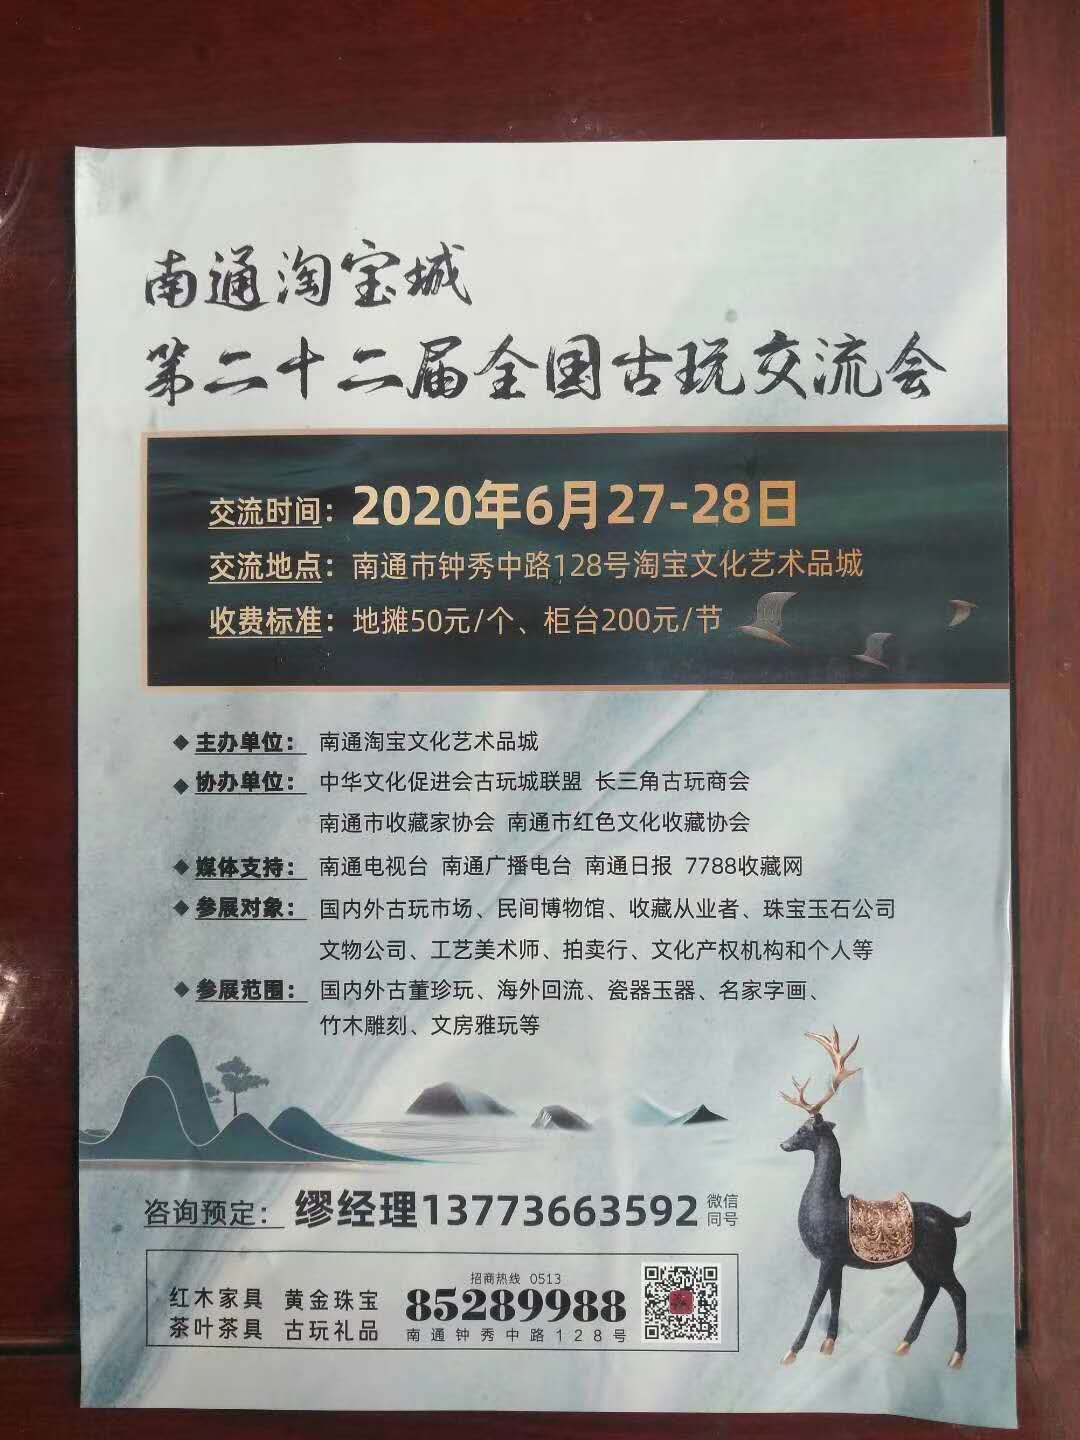 6月27-28 南通淘宝城第二十二届古玩交流会